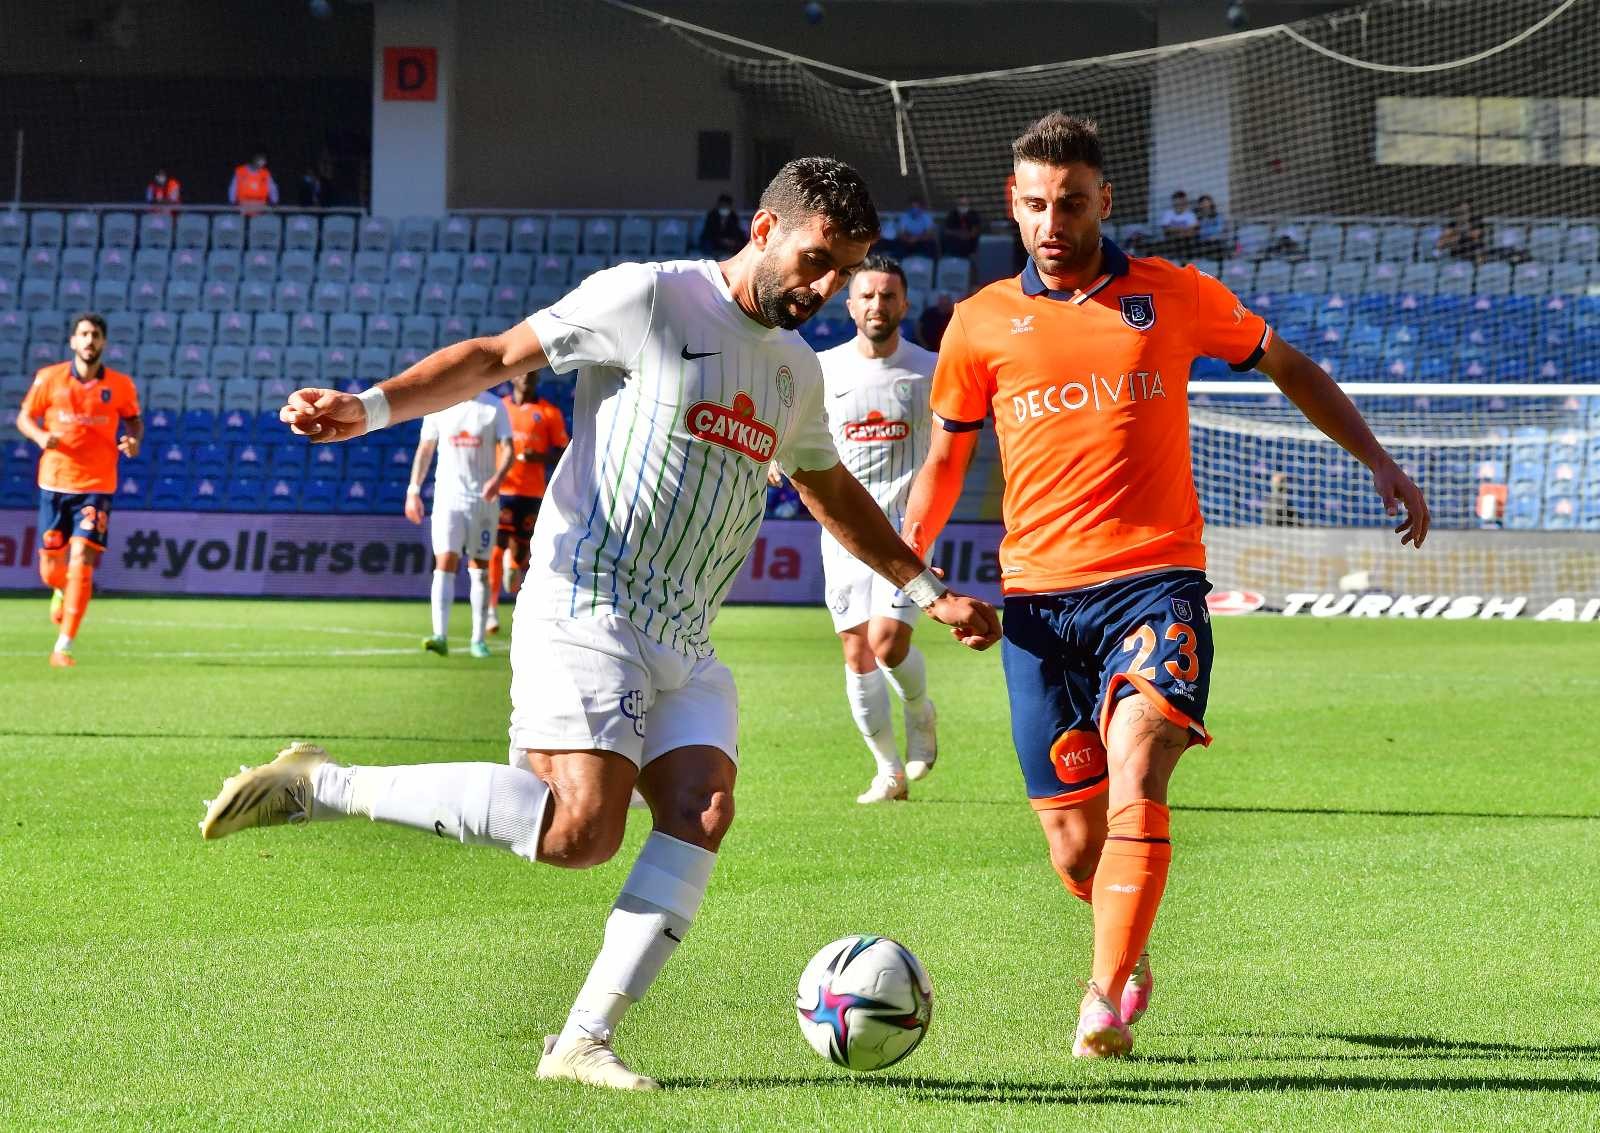 Süper Lig: Medipol Başakşehir: 1 - Çaykur Rizespor: 0 (İlk yarı) #istanbul